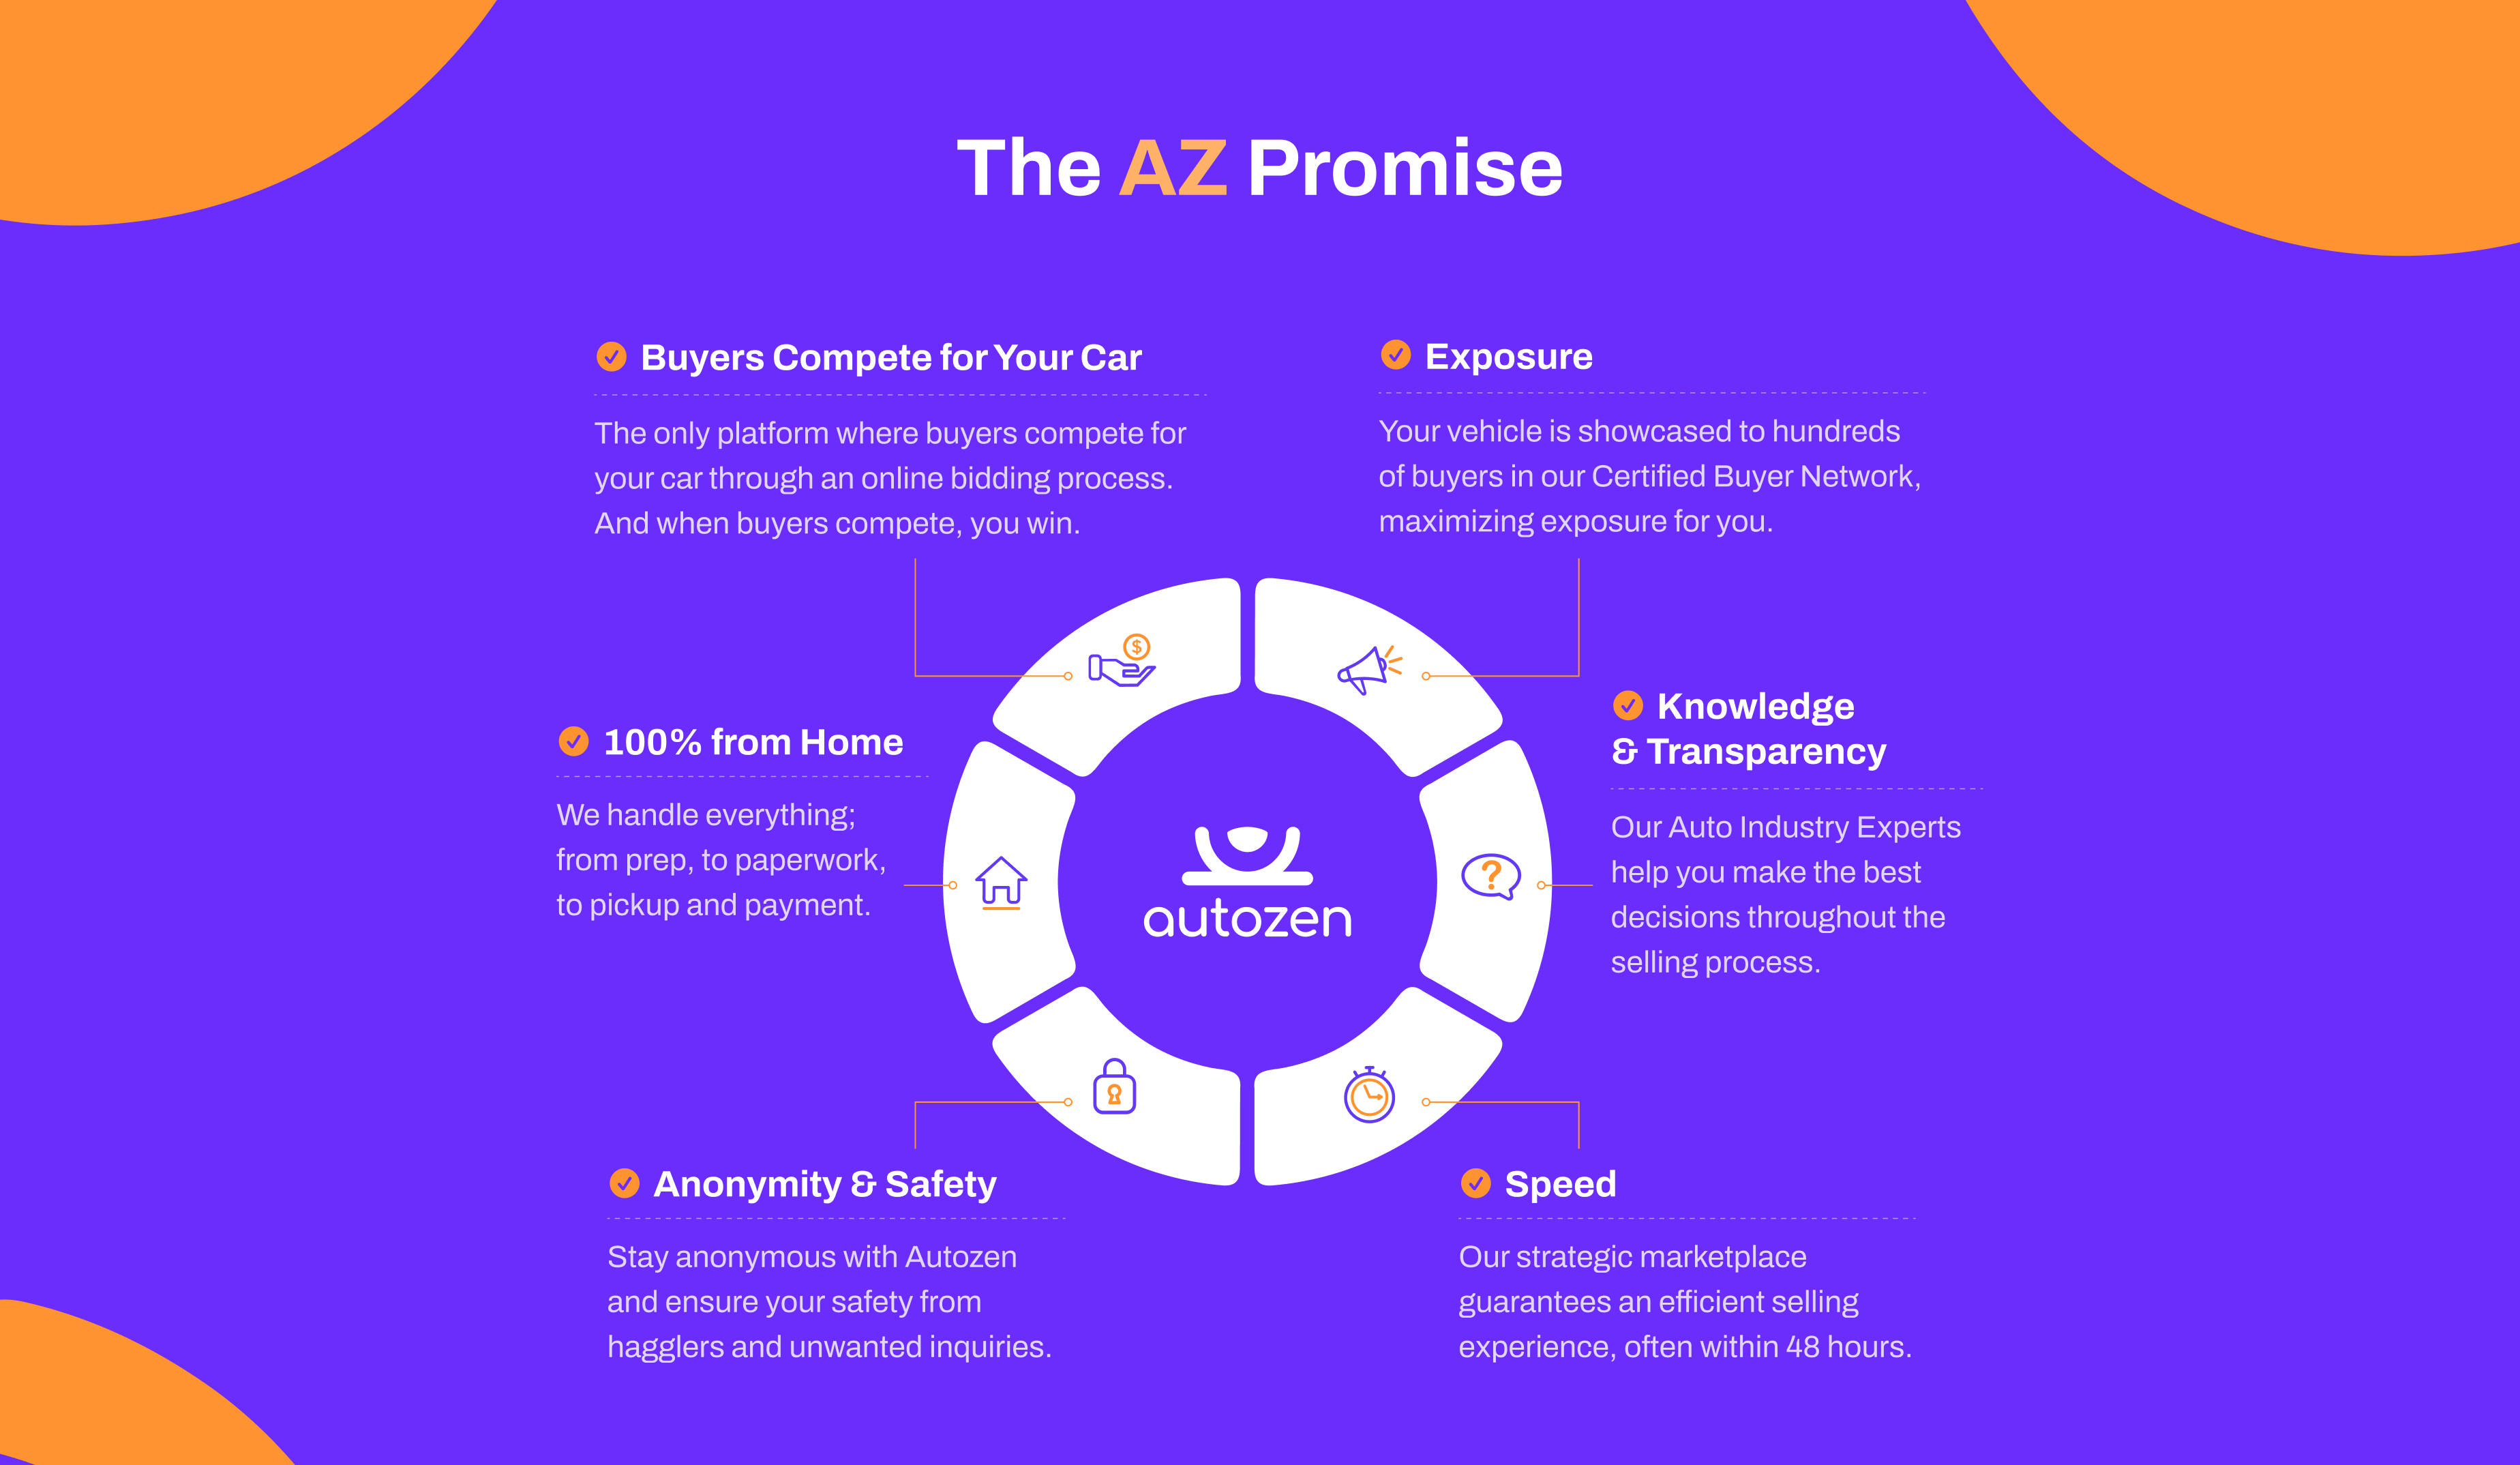 az-promise-infographic-revised-nov309-3